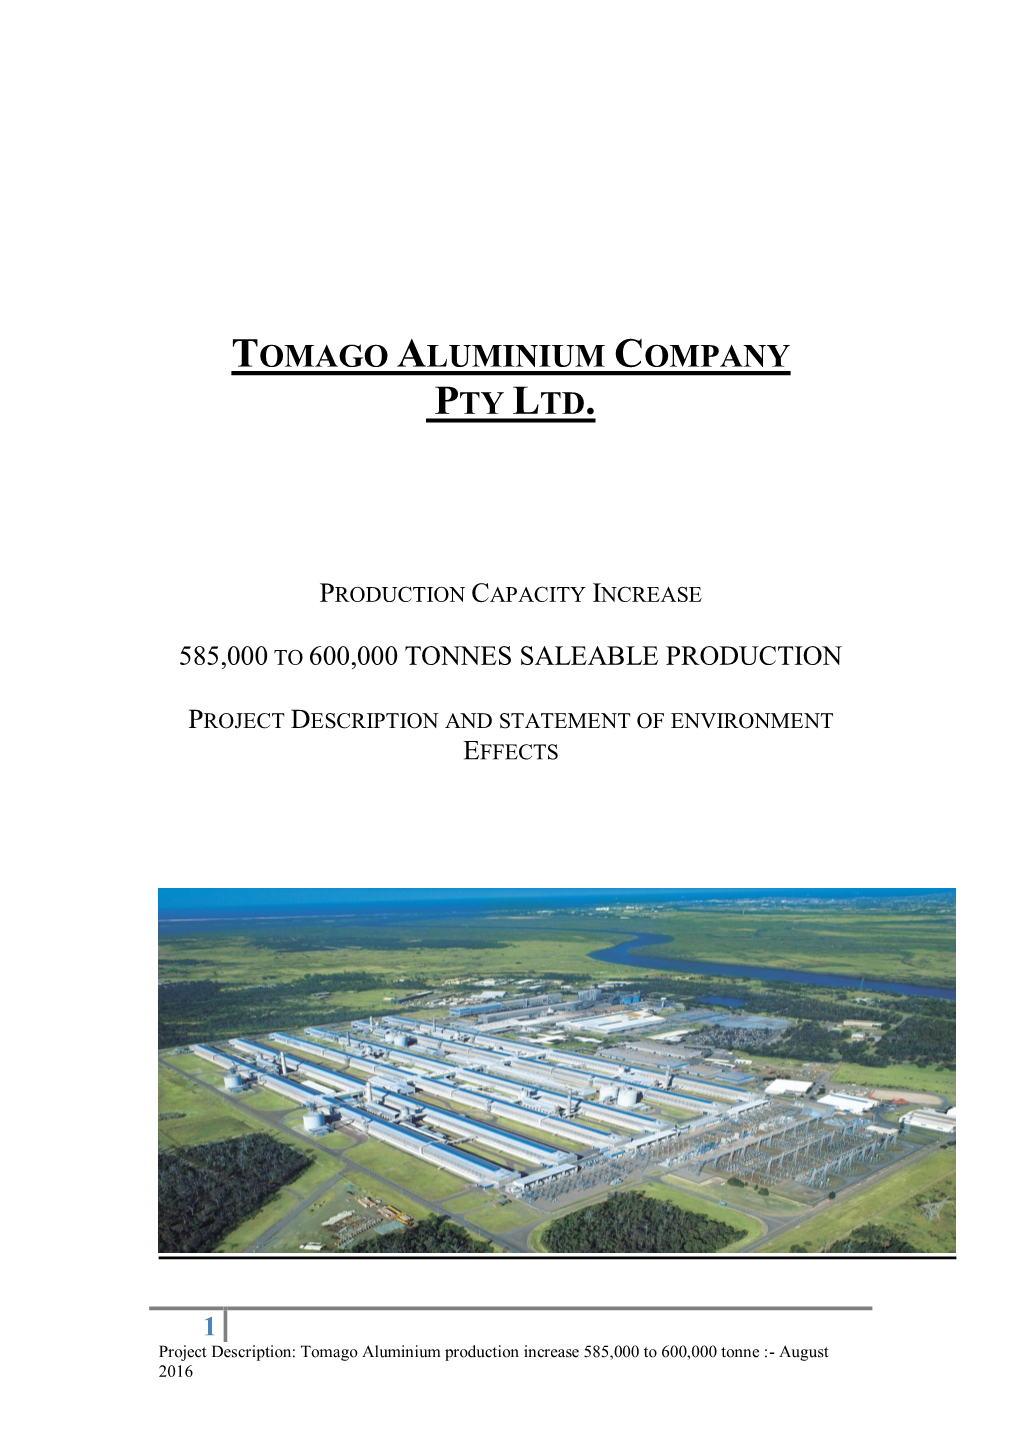 Tomago Aluminium Company Pty Ltd